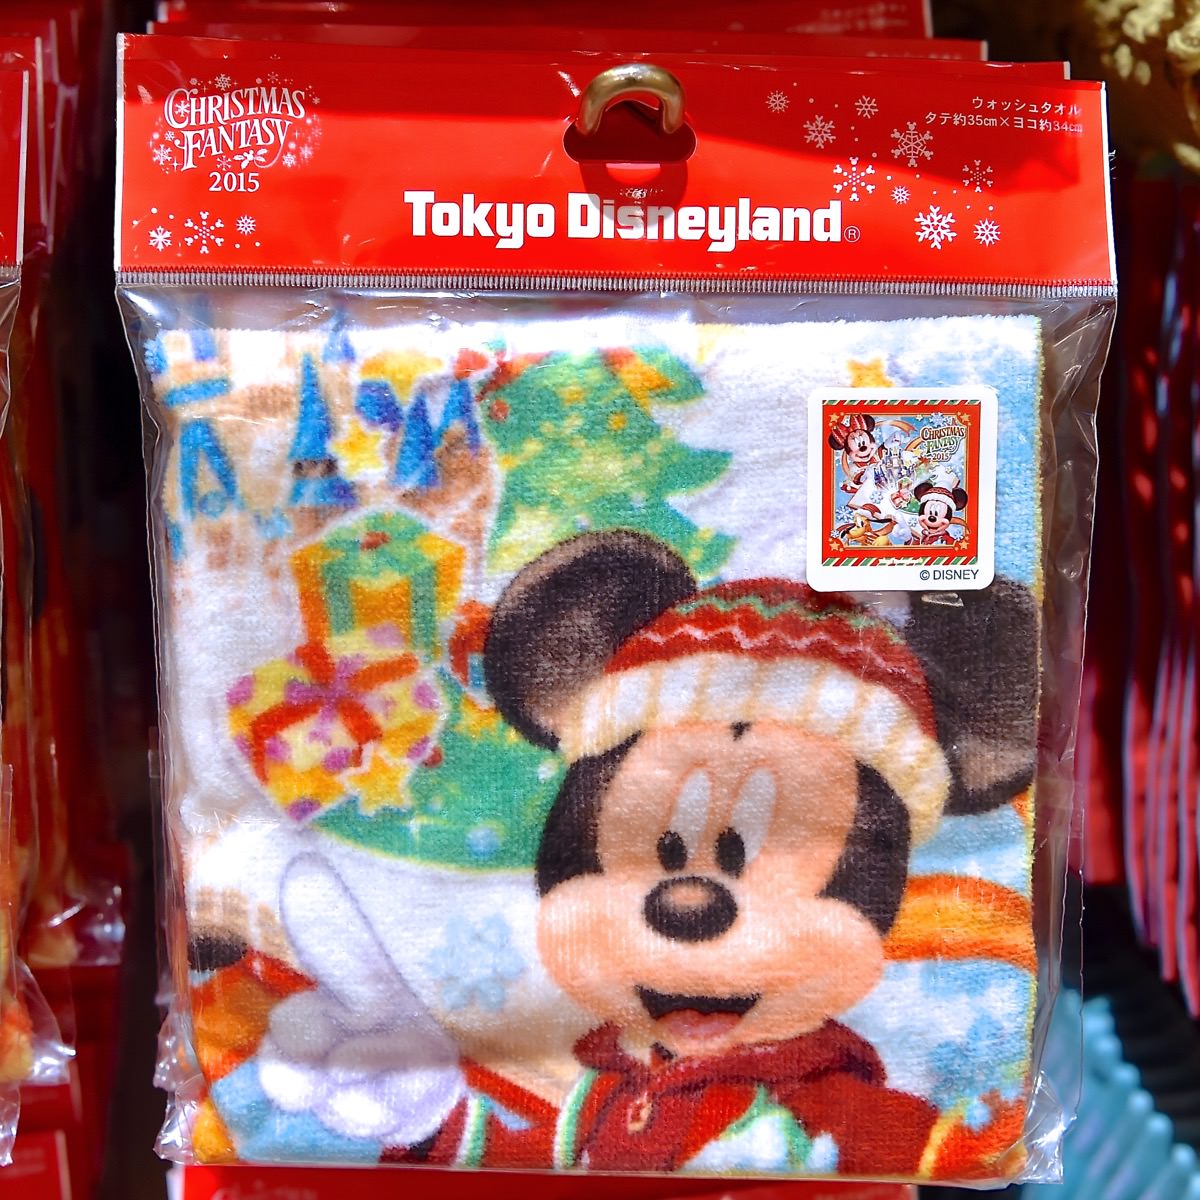 ディズニー クリスマス ストーリーズデザイン 東京ディズニーランド クリスマスファンタジー15 スペシャルグッズ